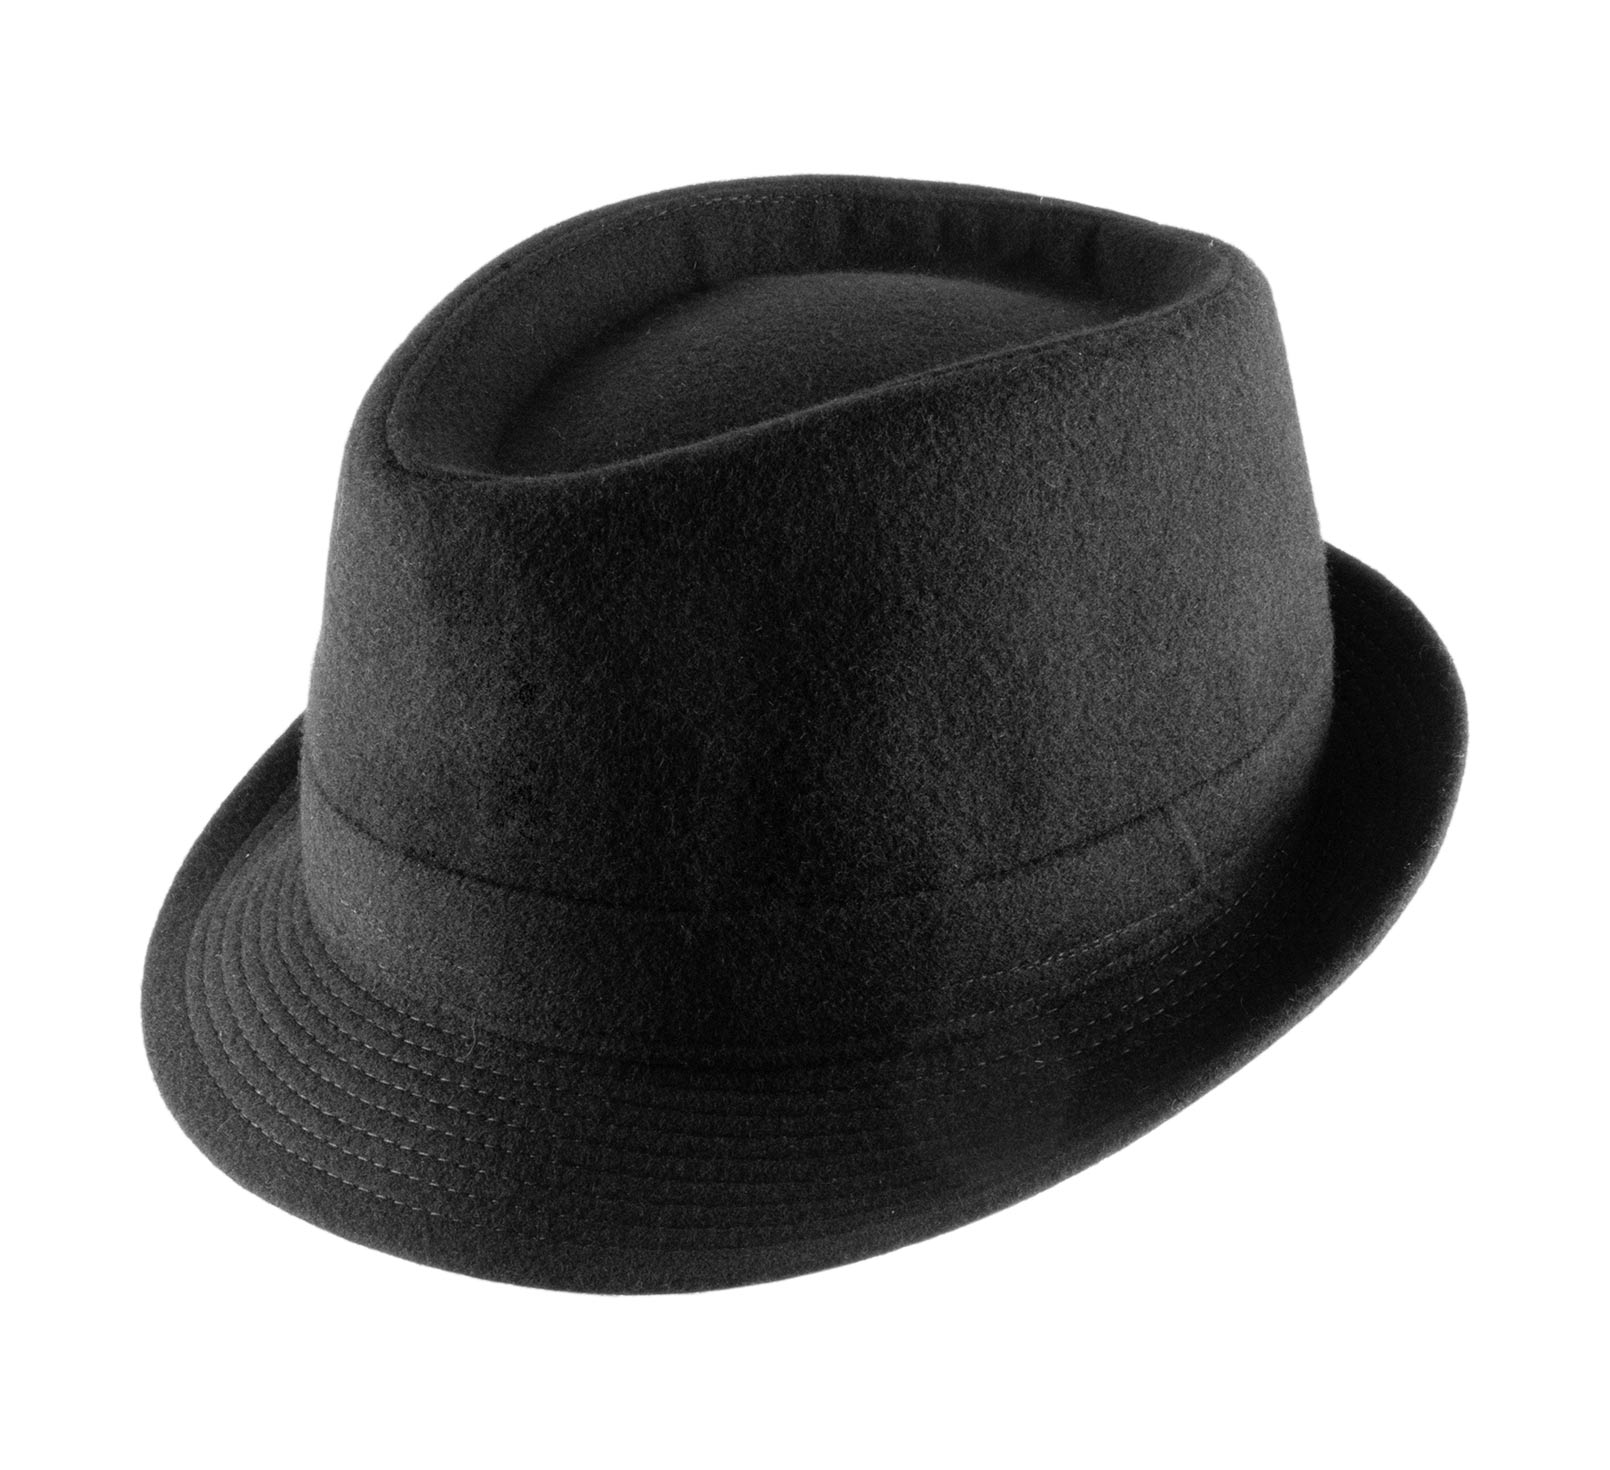 Chapeau Homme Feutre 1ª Qualité - Taille 59 - - Chapeaux D'Homme